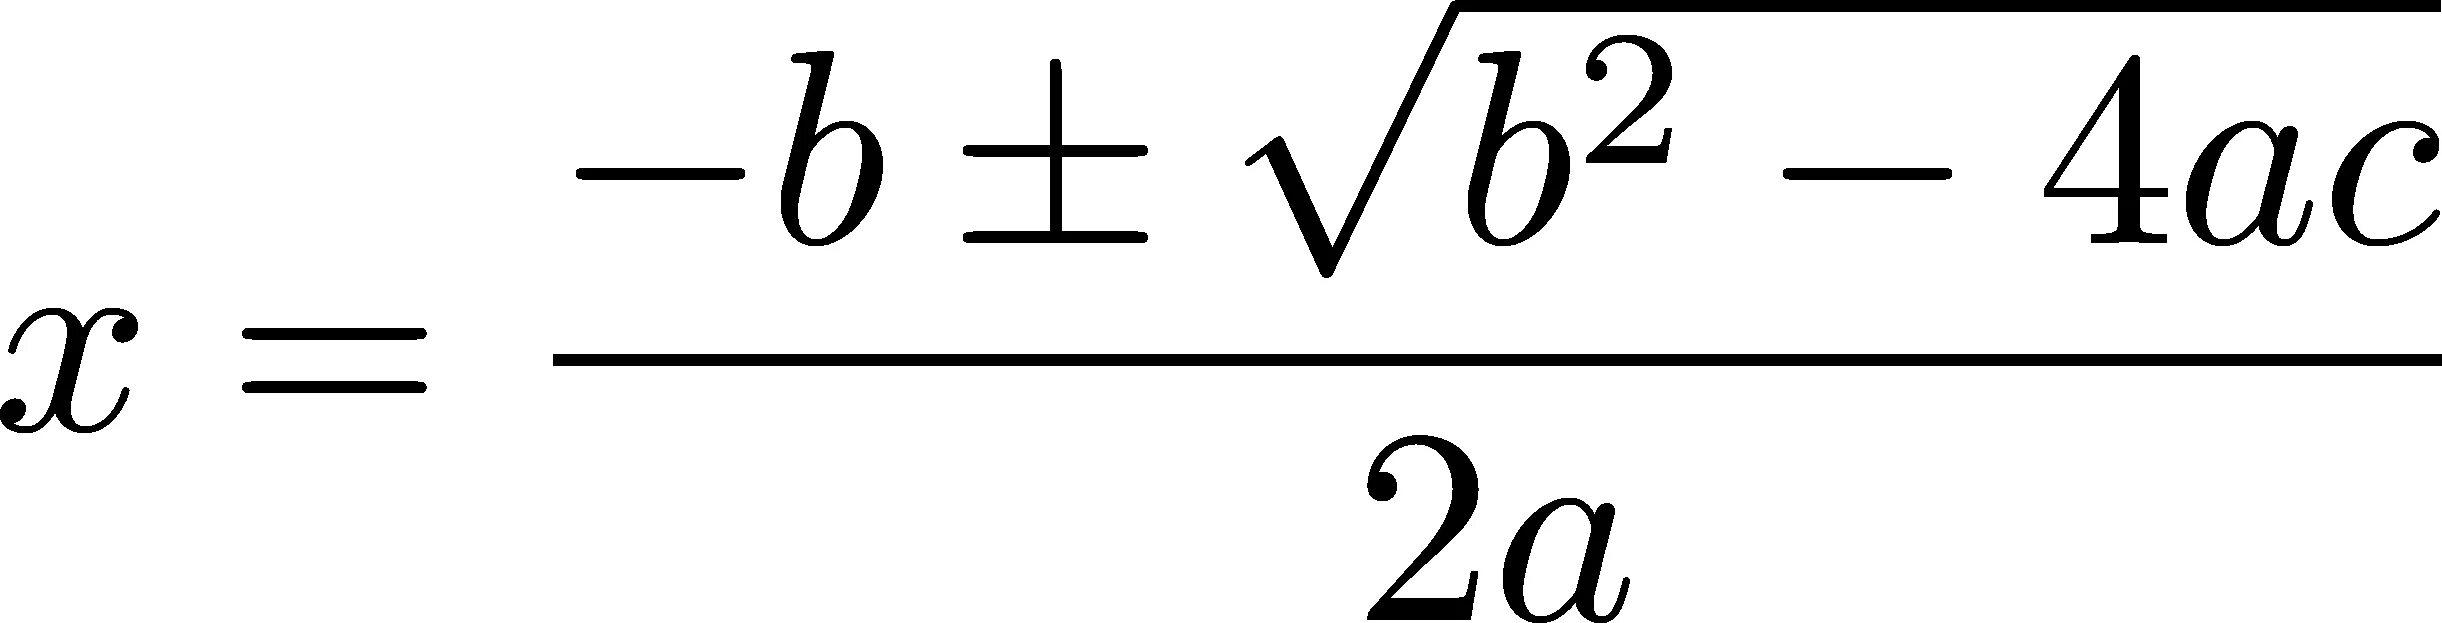 A2 1 формула. -B*корень b^2-4ac\2a. X1 2 формула. Формула для квадратного уравнения x-x1 x-x2. Формула с корнями дискриминанта x-x1 x-x2.